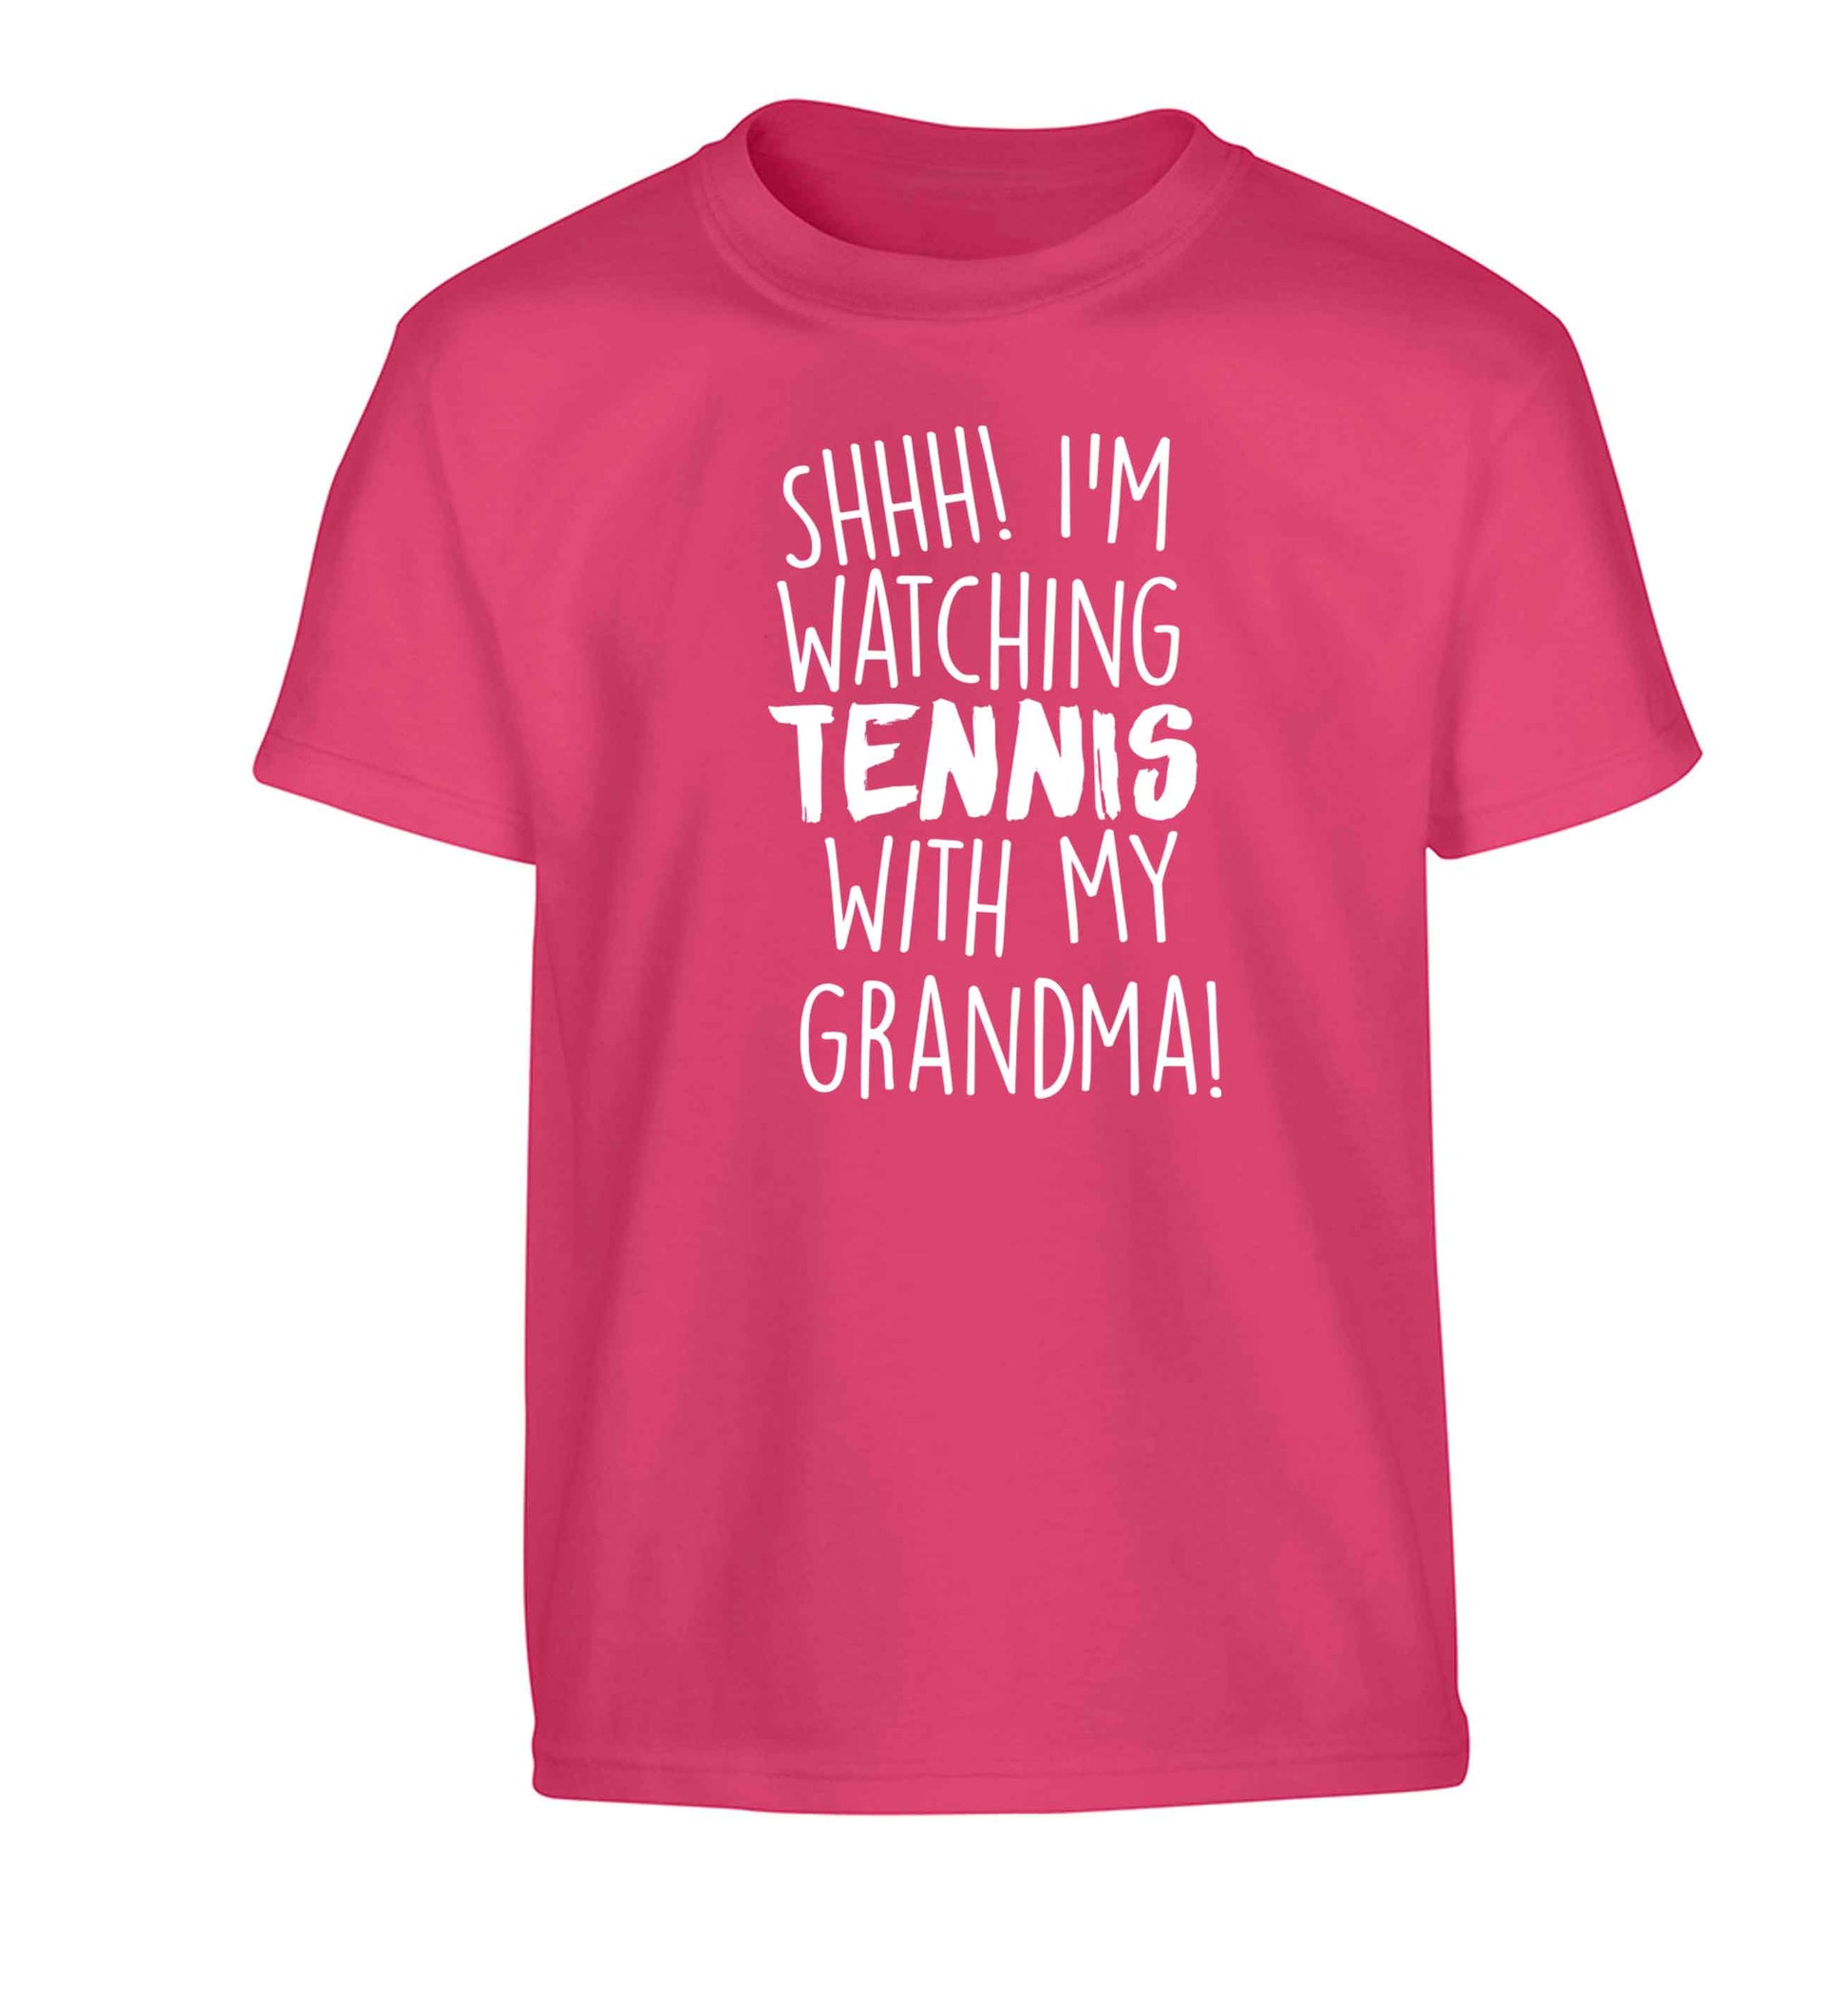 Shh! I'm watching tennis with my grandma! Children's pink Tshirt 12-13 Years